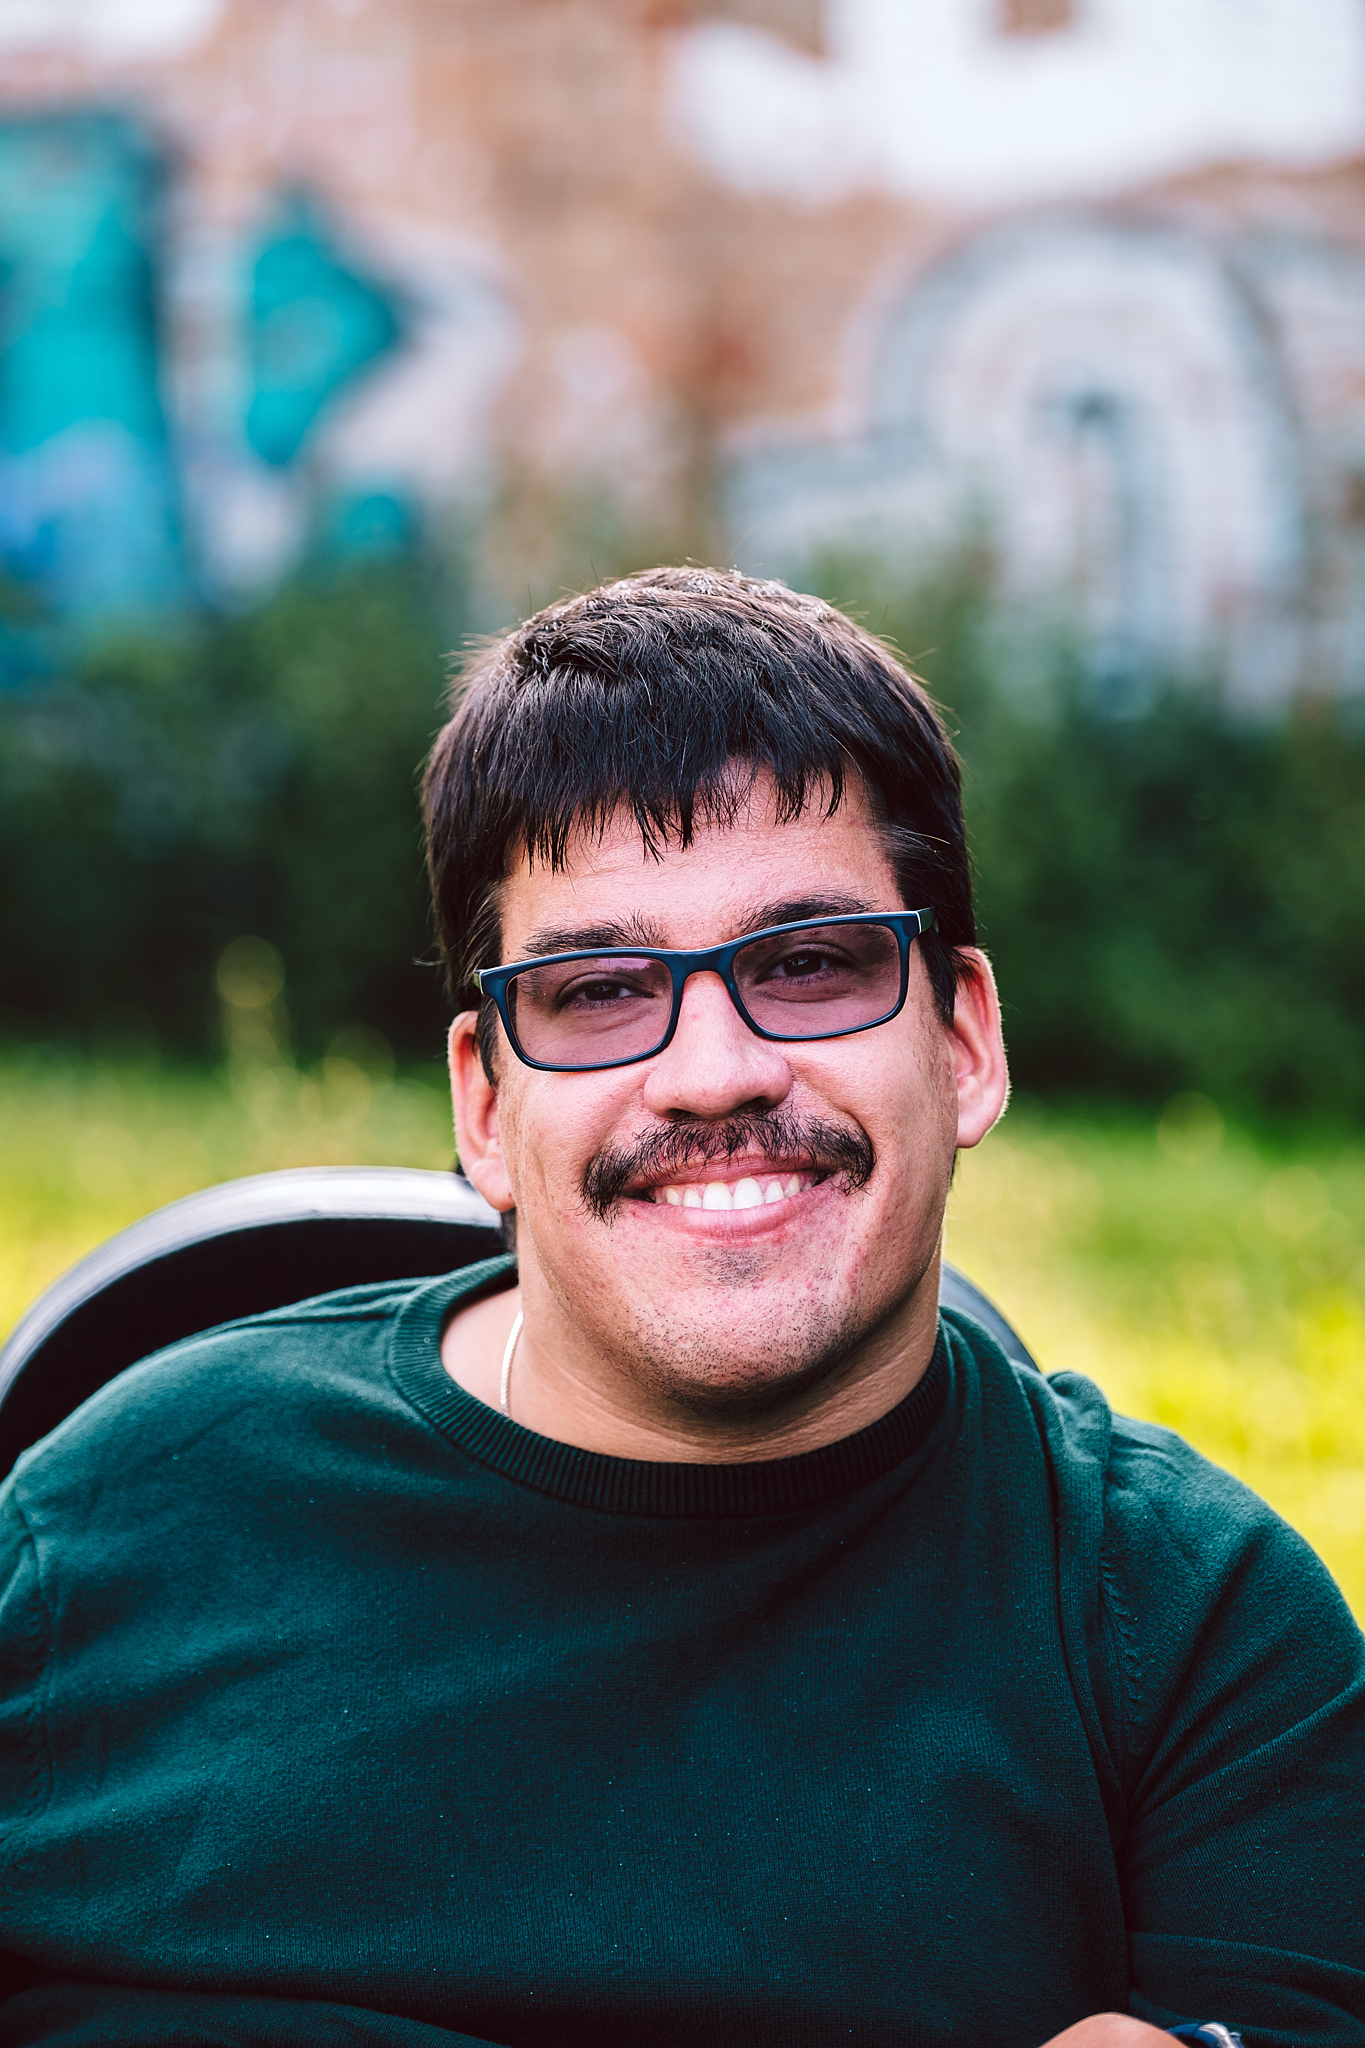 Porträtfoto von Sven Papenbrock. Er trägt einen grünen Pulli, eine Brille und lächelt in die Kamera.